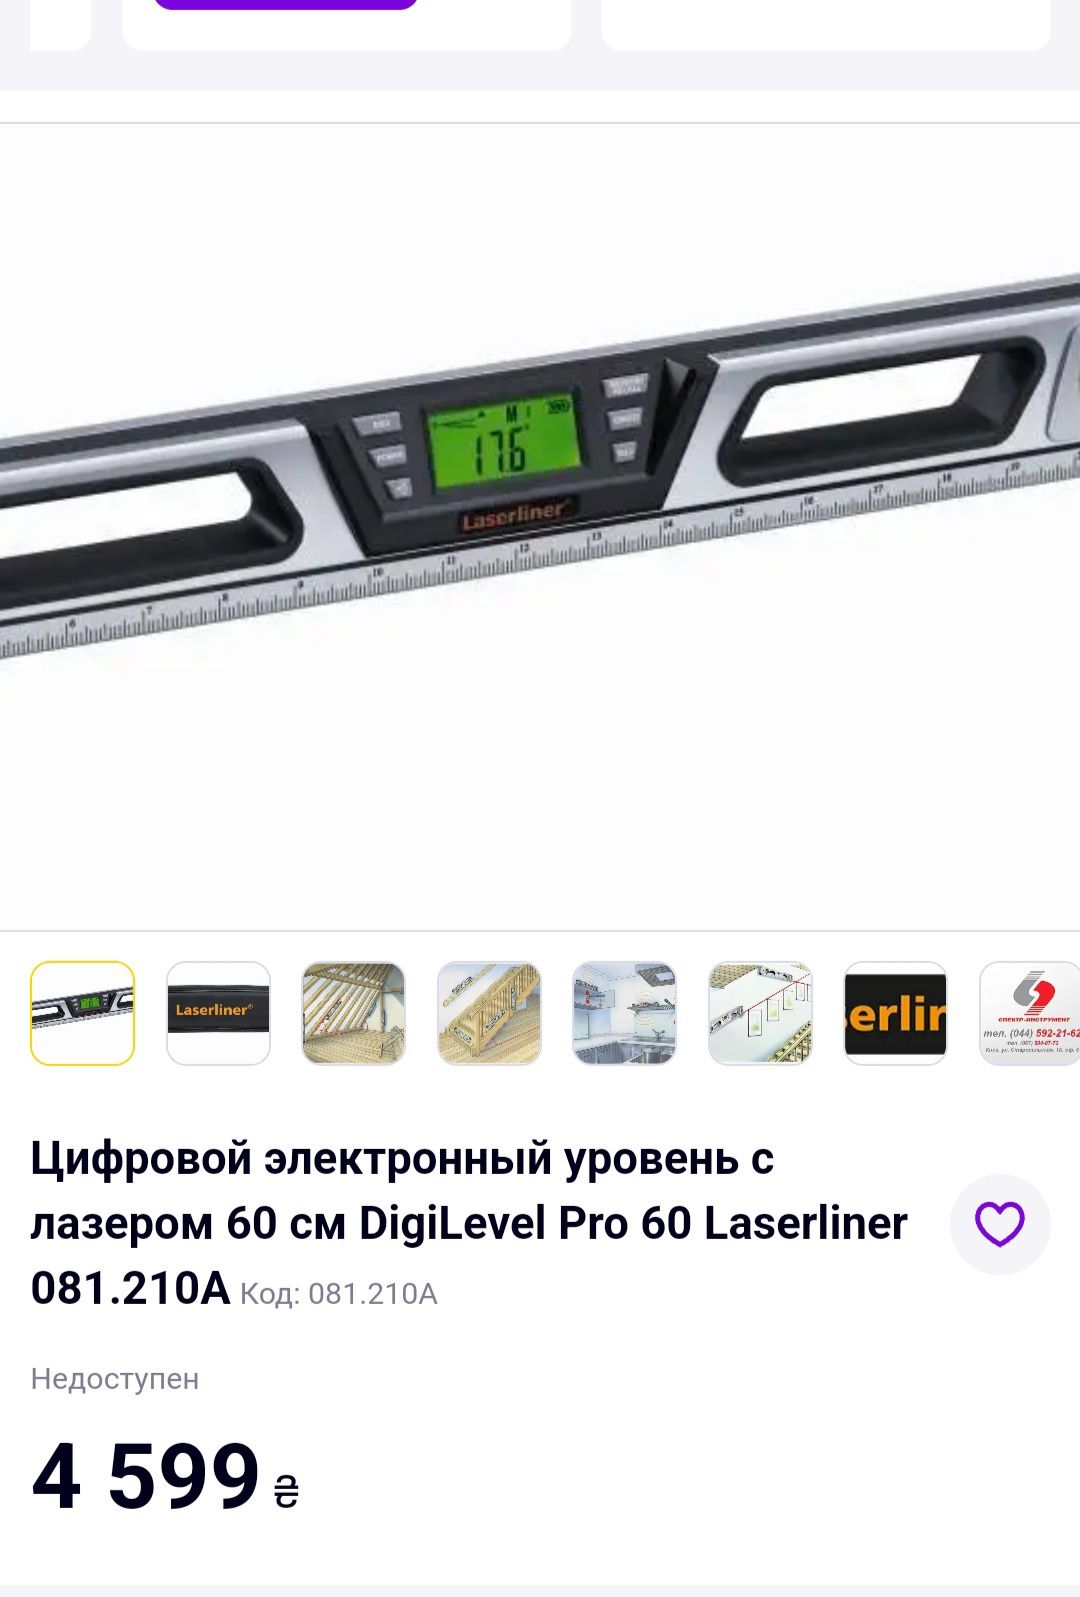 Цифровой электронный уровень  Laserliner DigiLevel